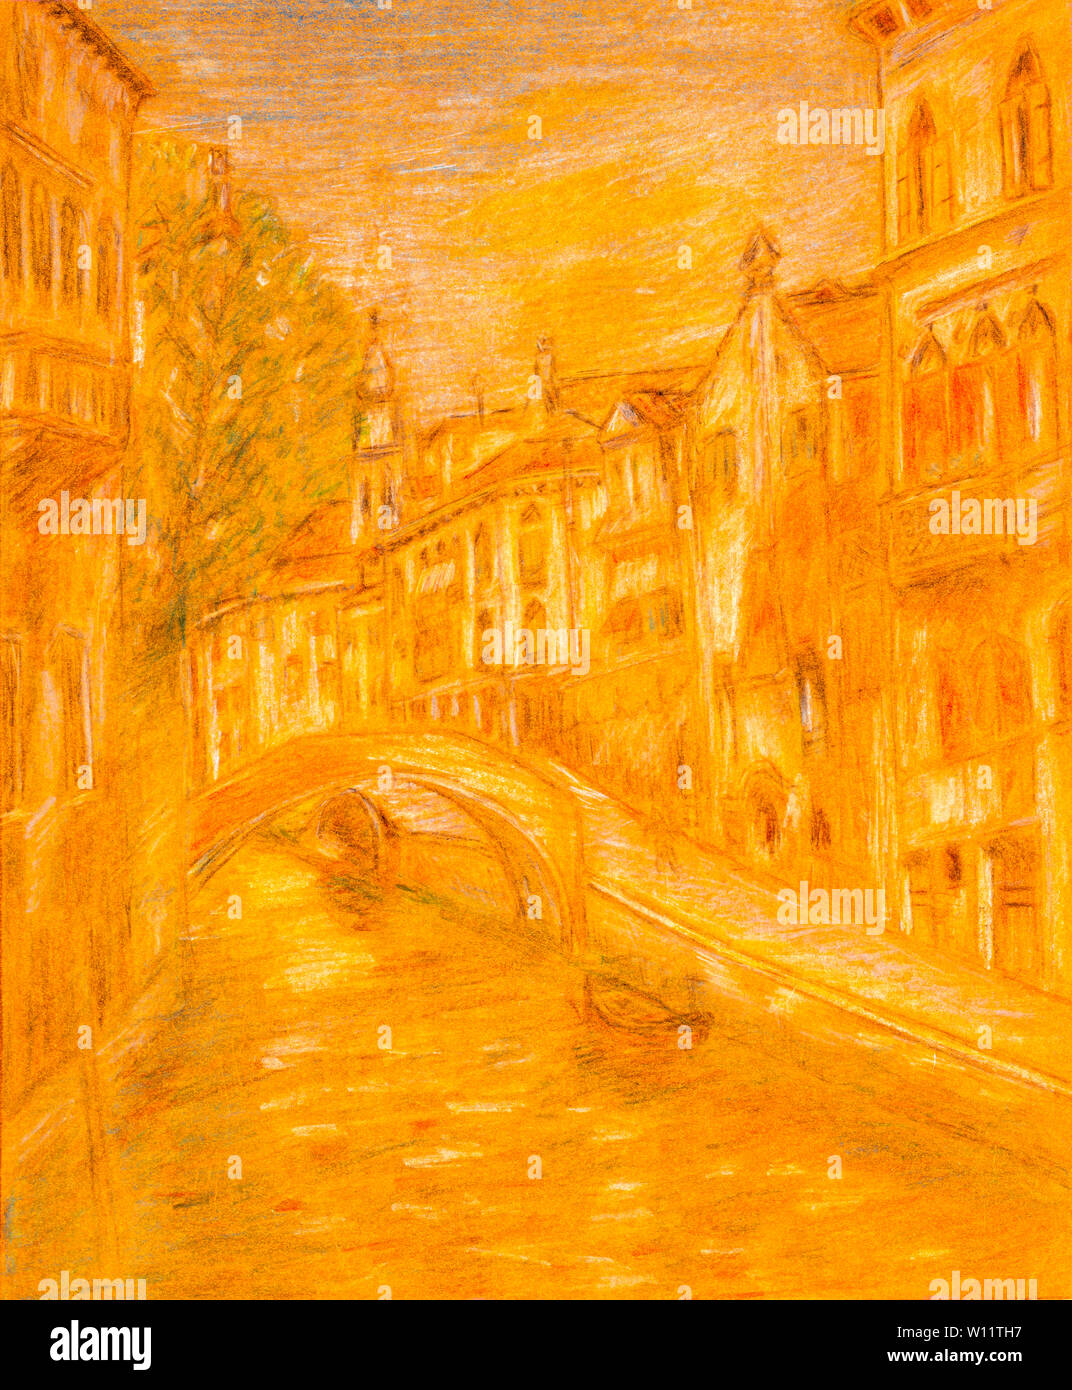 Pencil sketch of Venice city scene on orange colored paper. Stock Photo